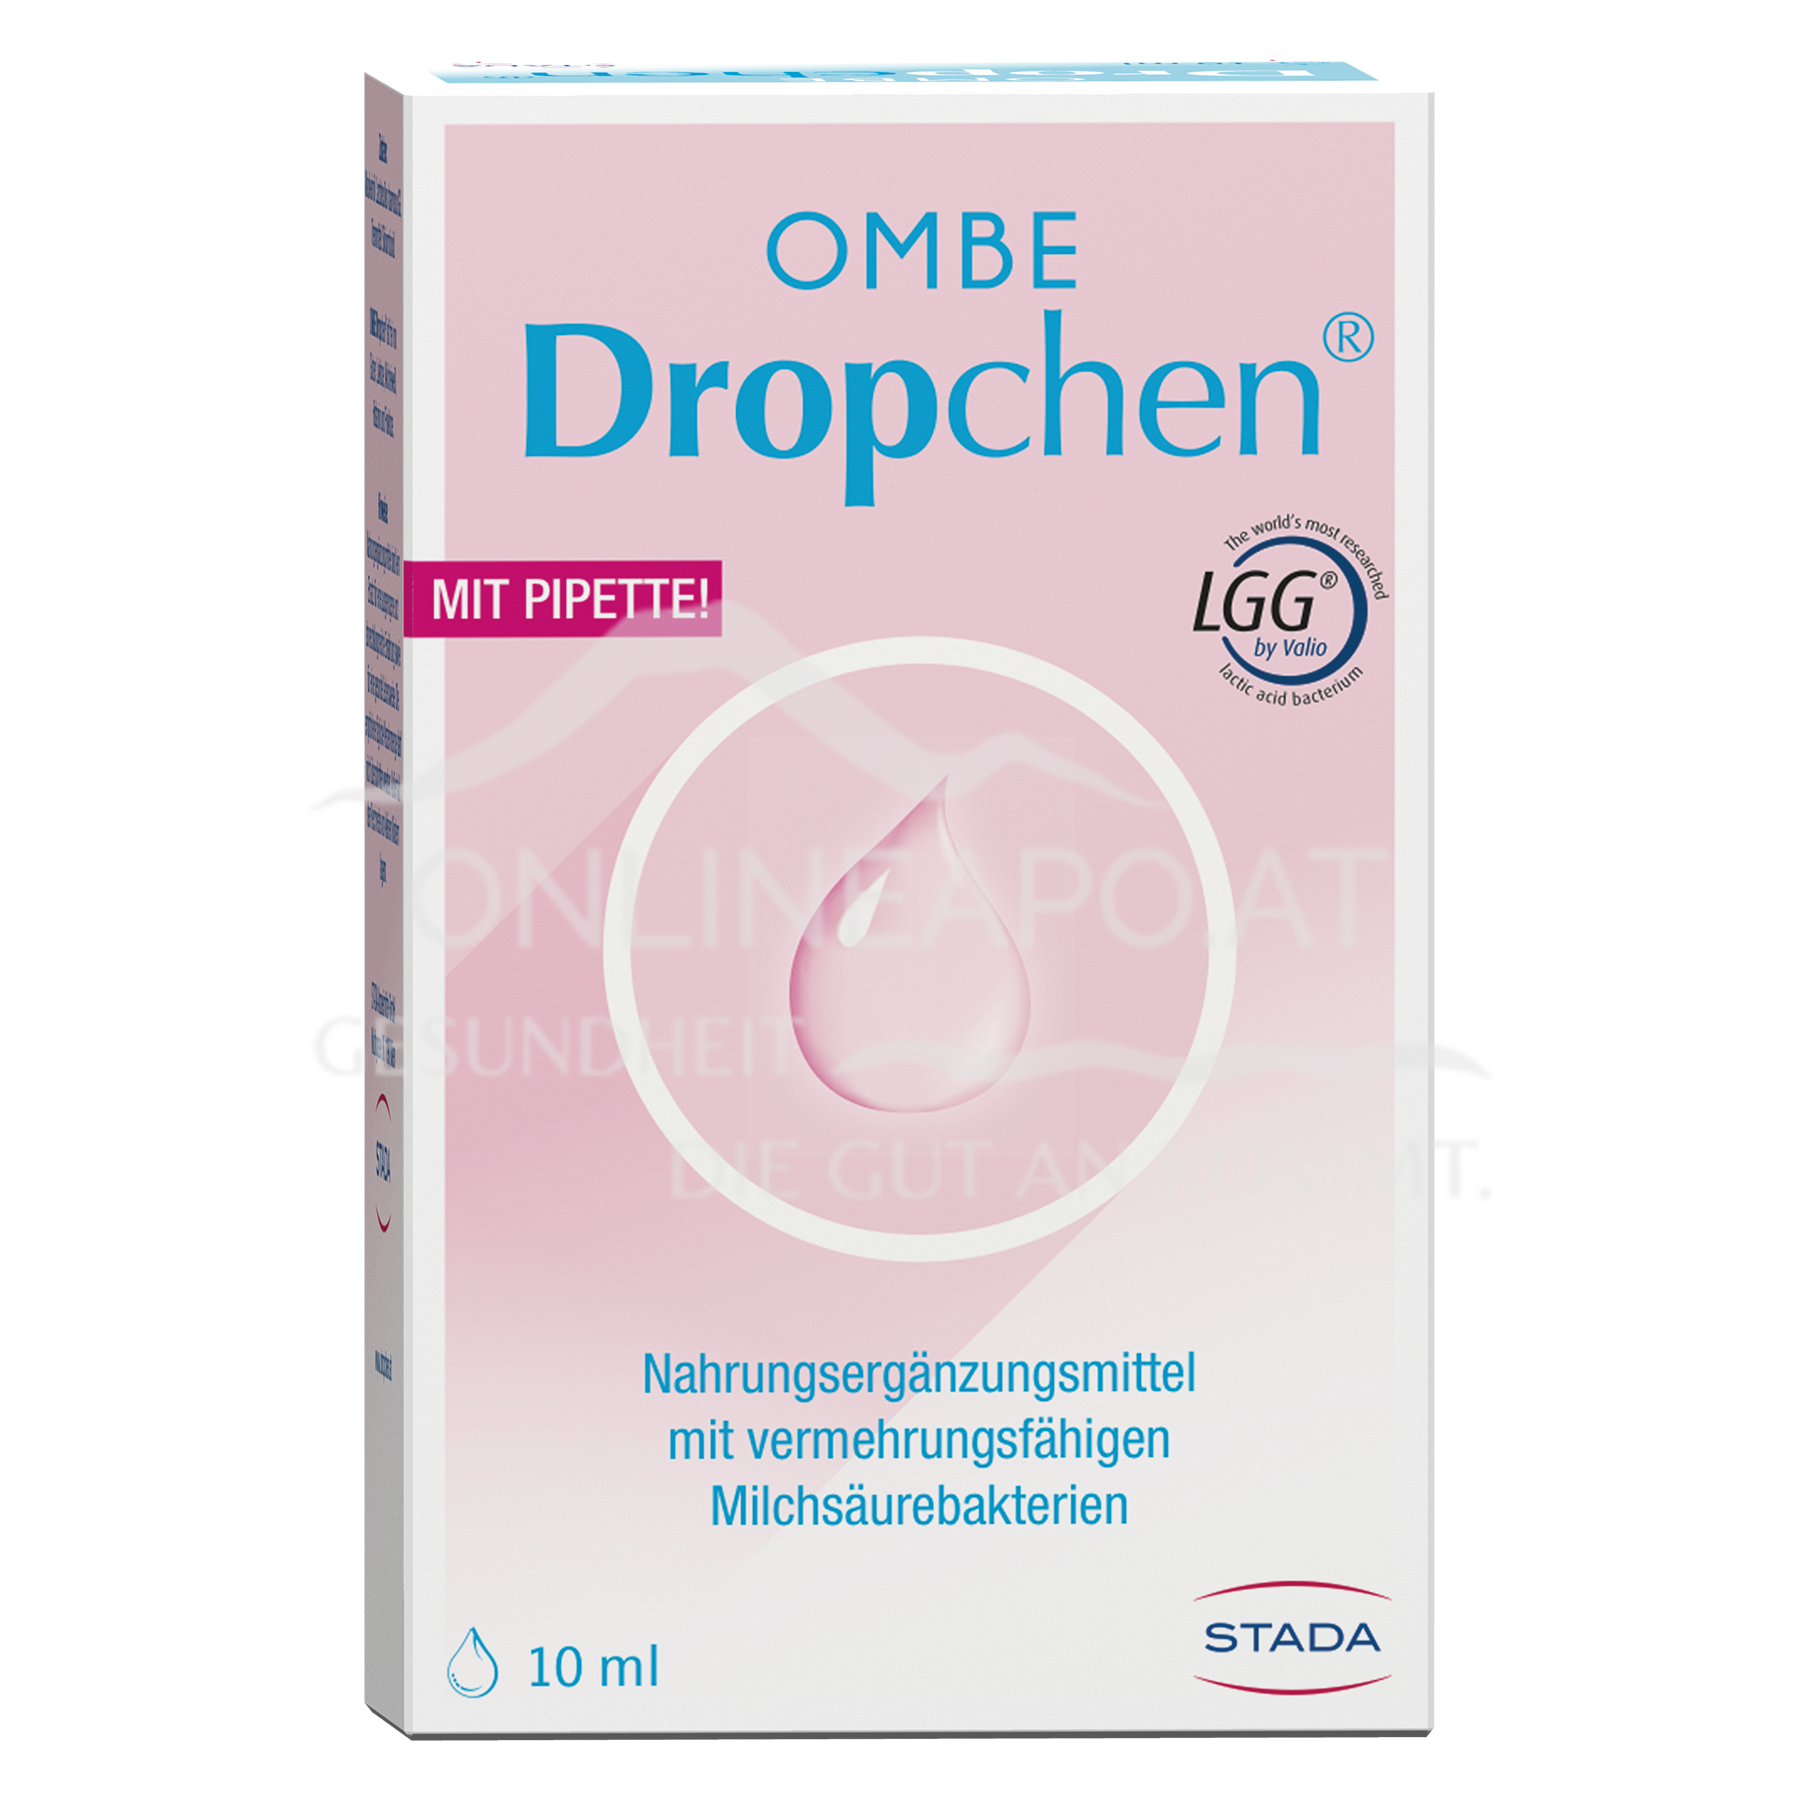 OMBE Dropchen®  schnell günstig geliefert